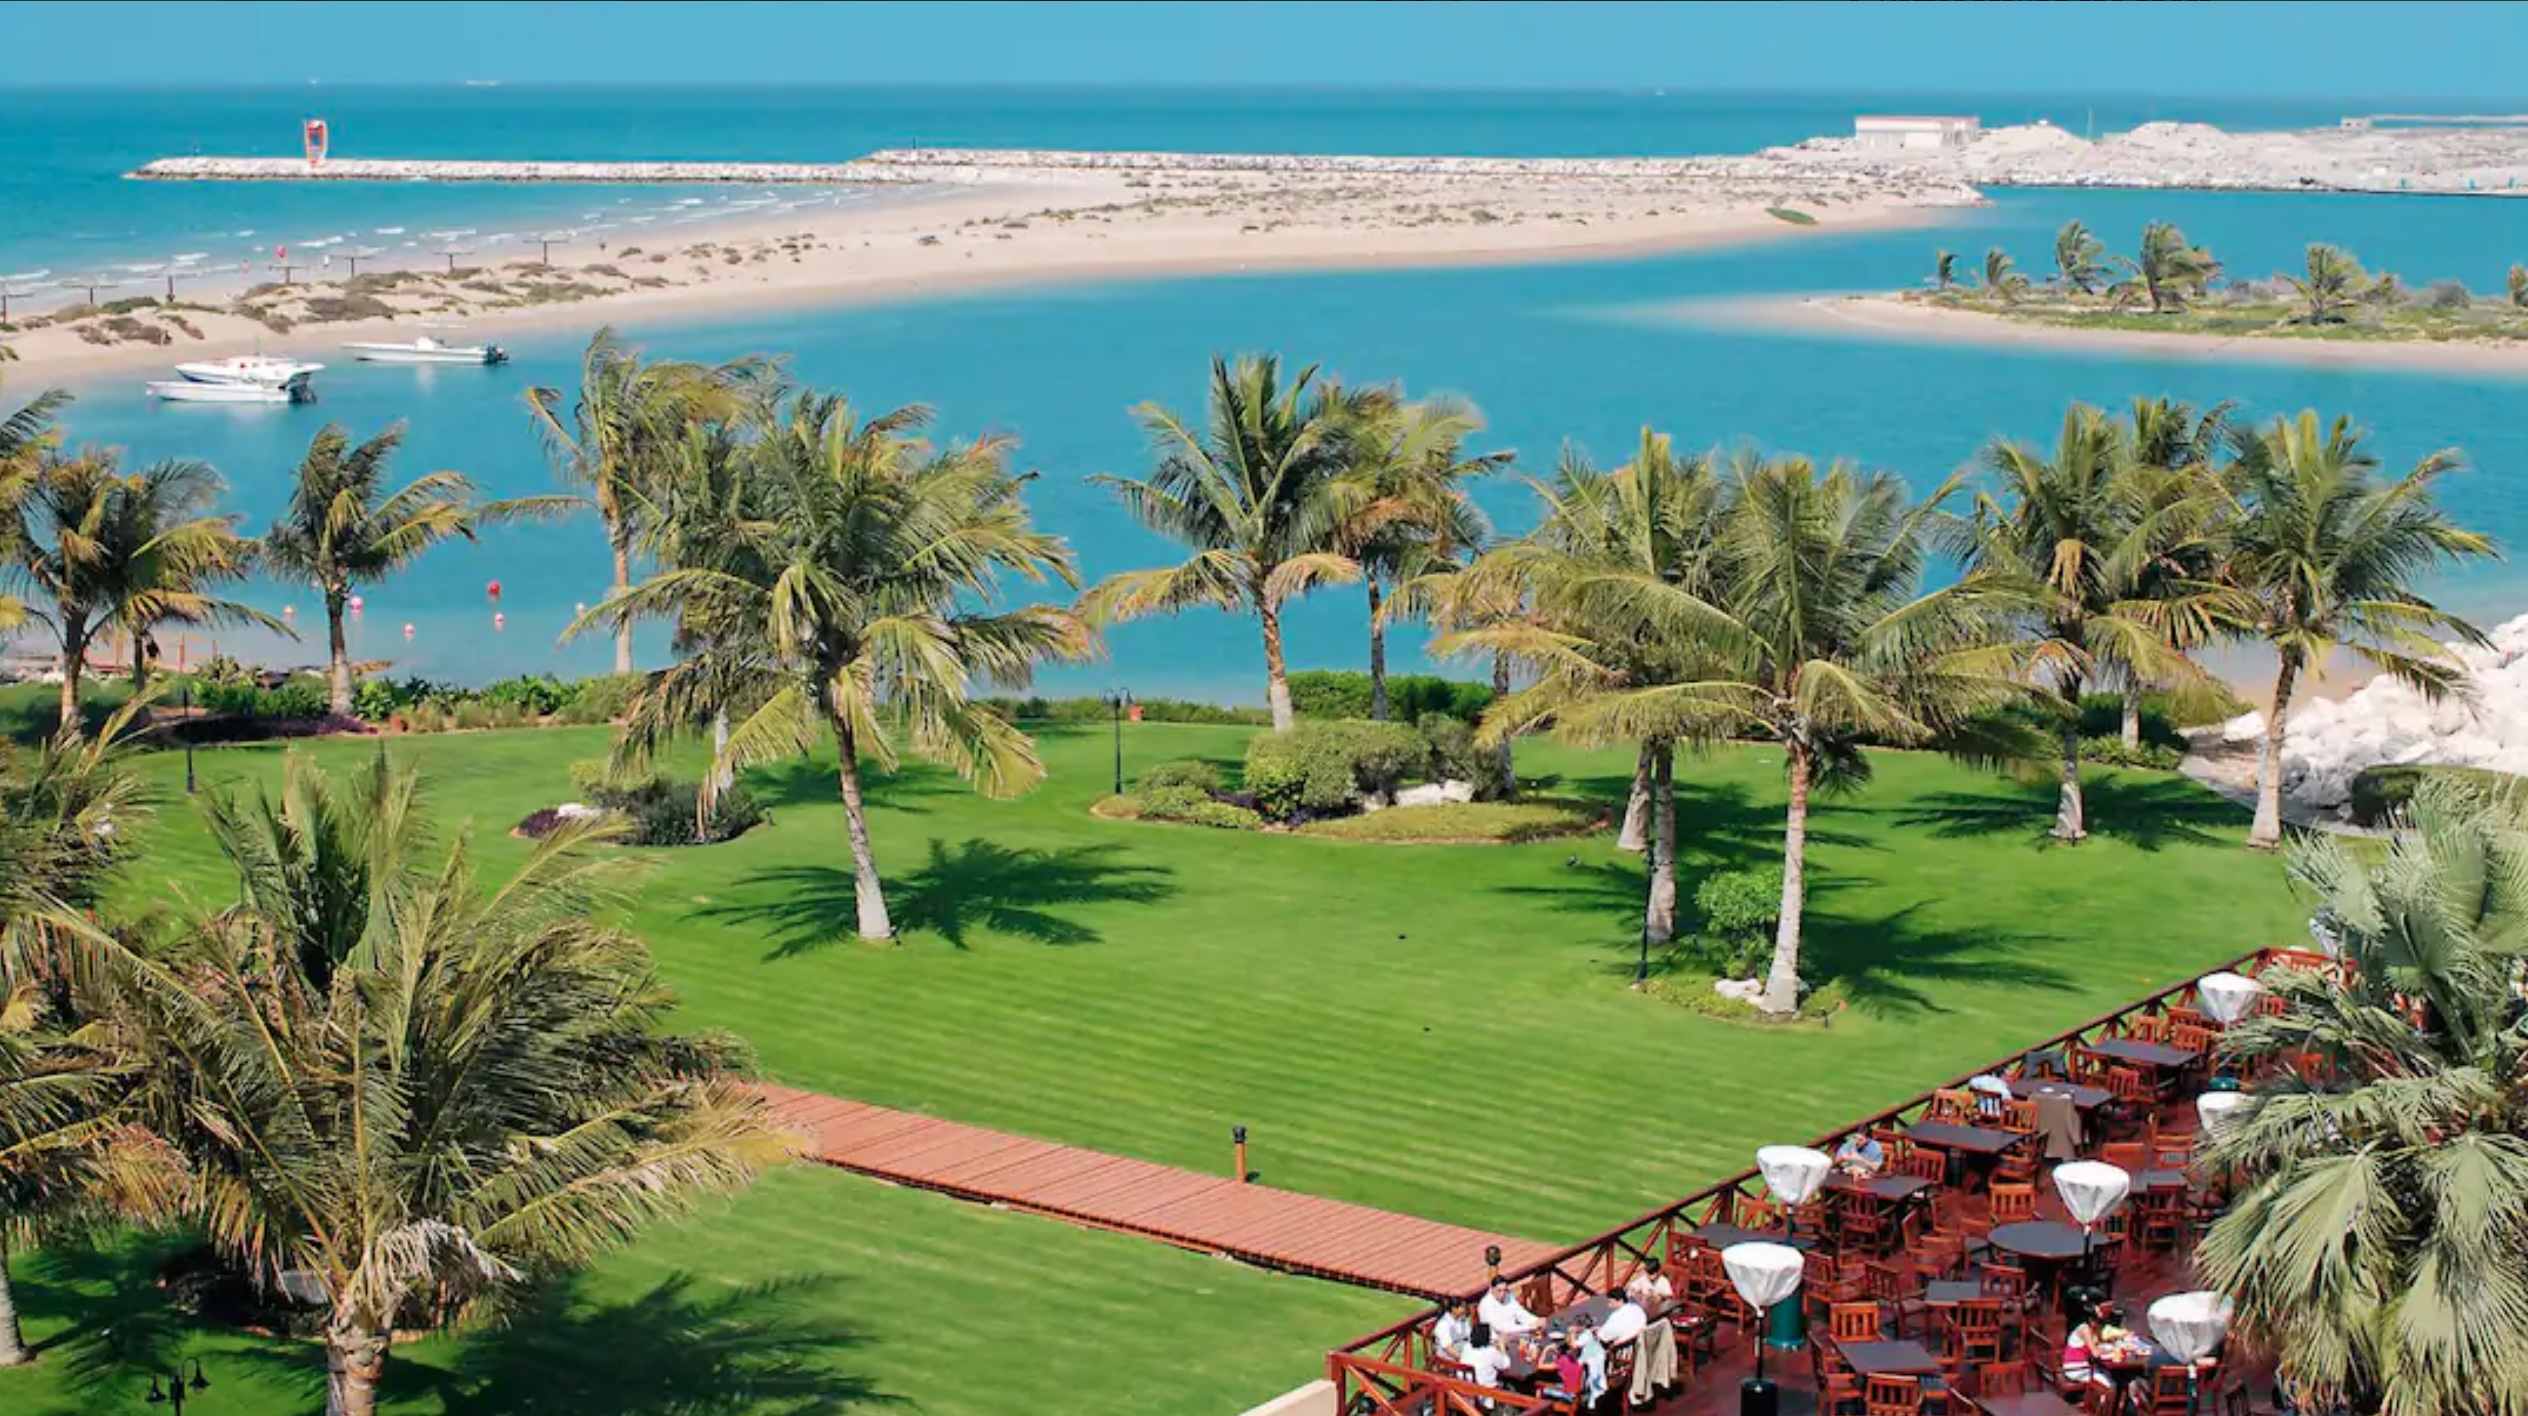 Hilton Al Hamra Beach & Golf Resort, Ras Al Khaimah